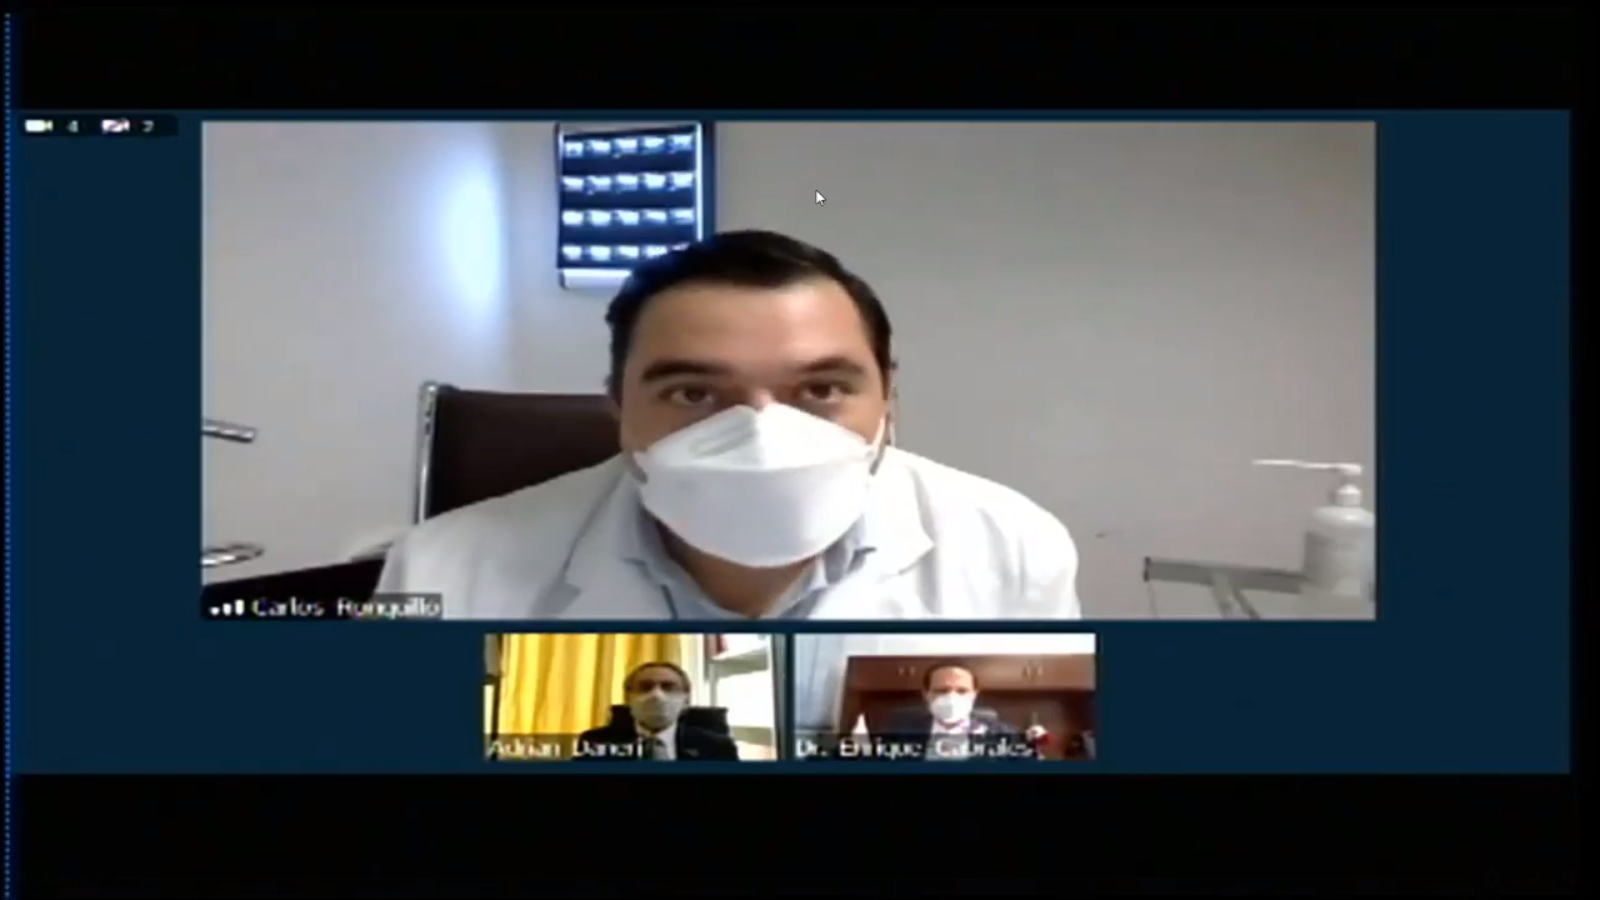 Captura de pantalla del Dr. Carlos A. Ronquillo haciendo uso de la palabra